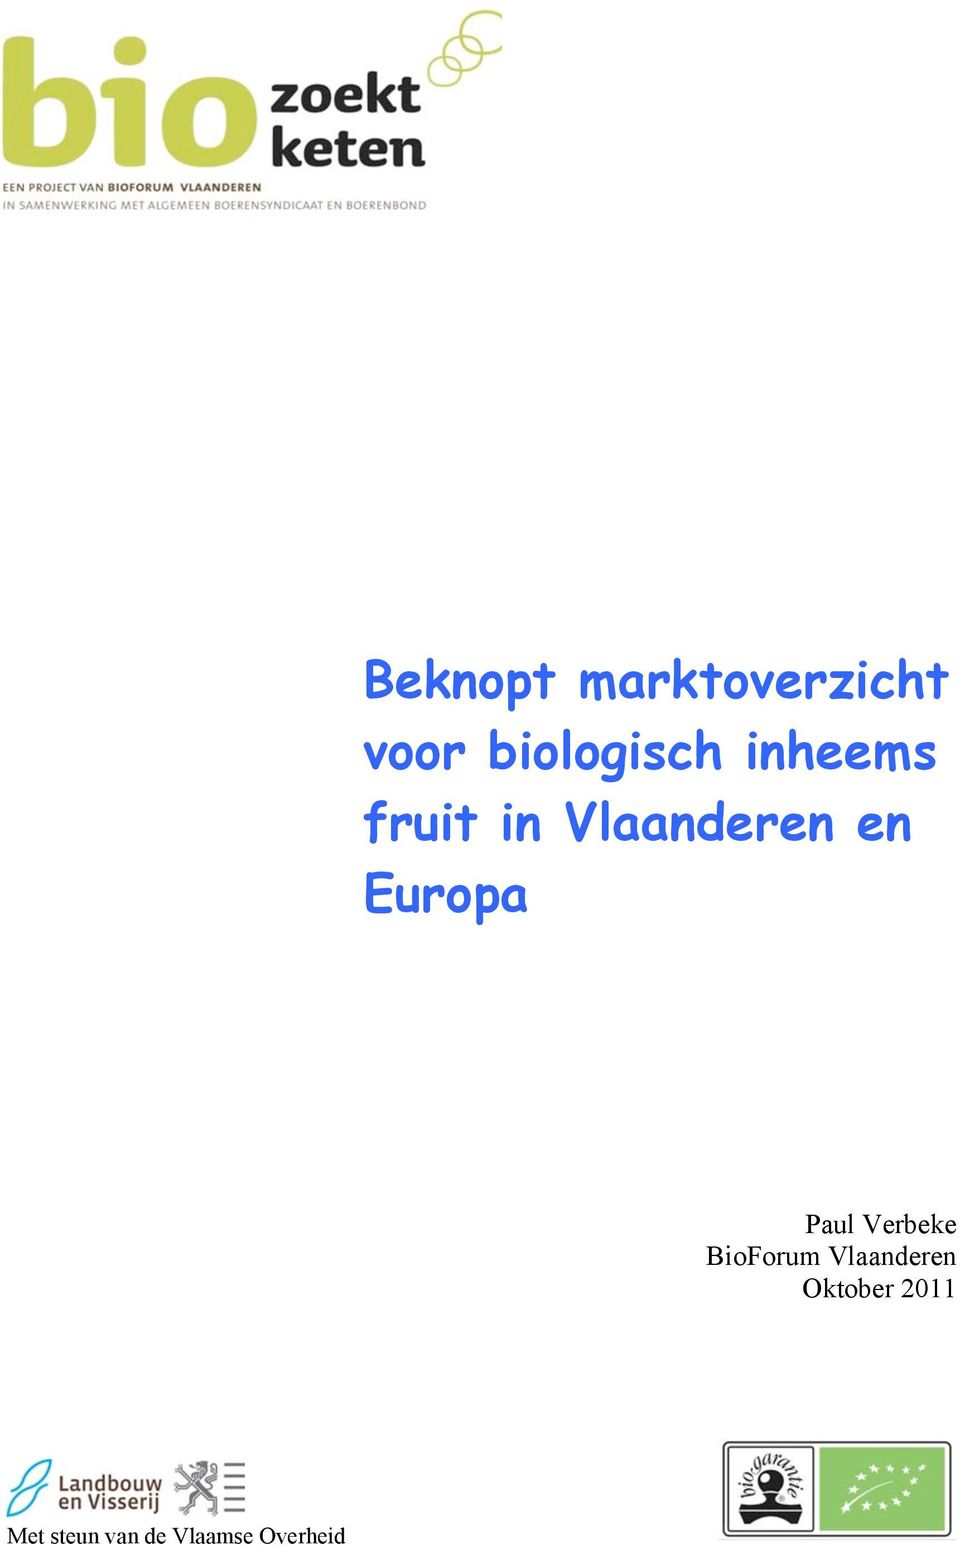 Paul Verbeke BioForum Vlaanderen